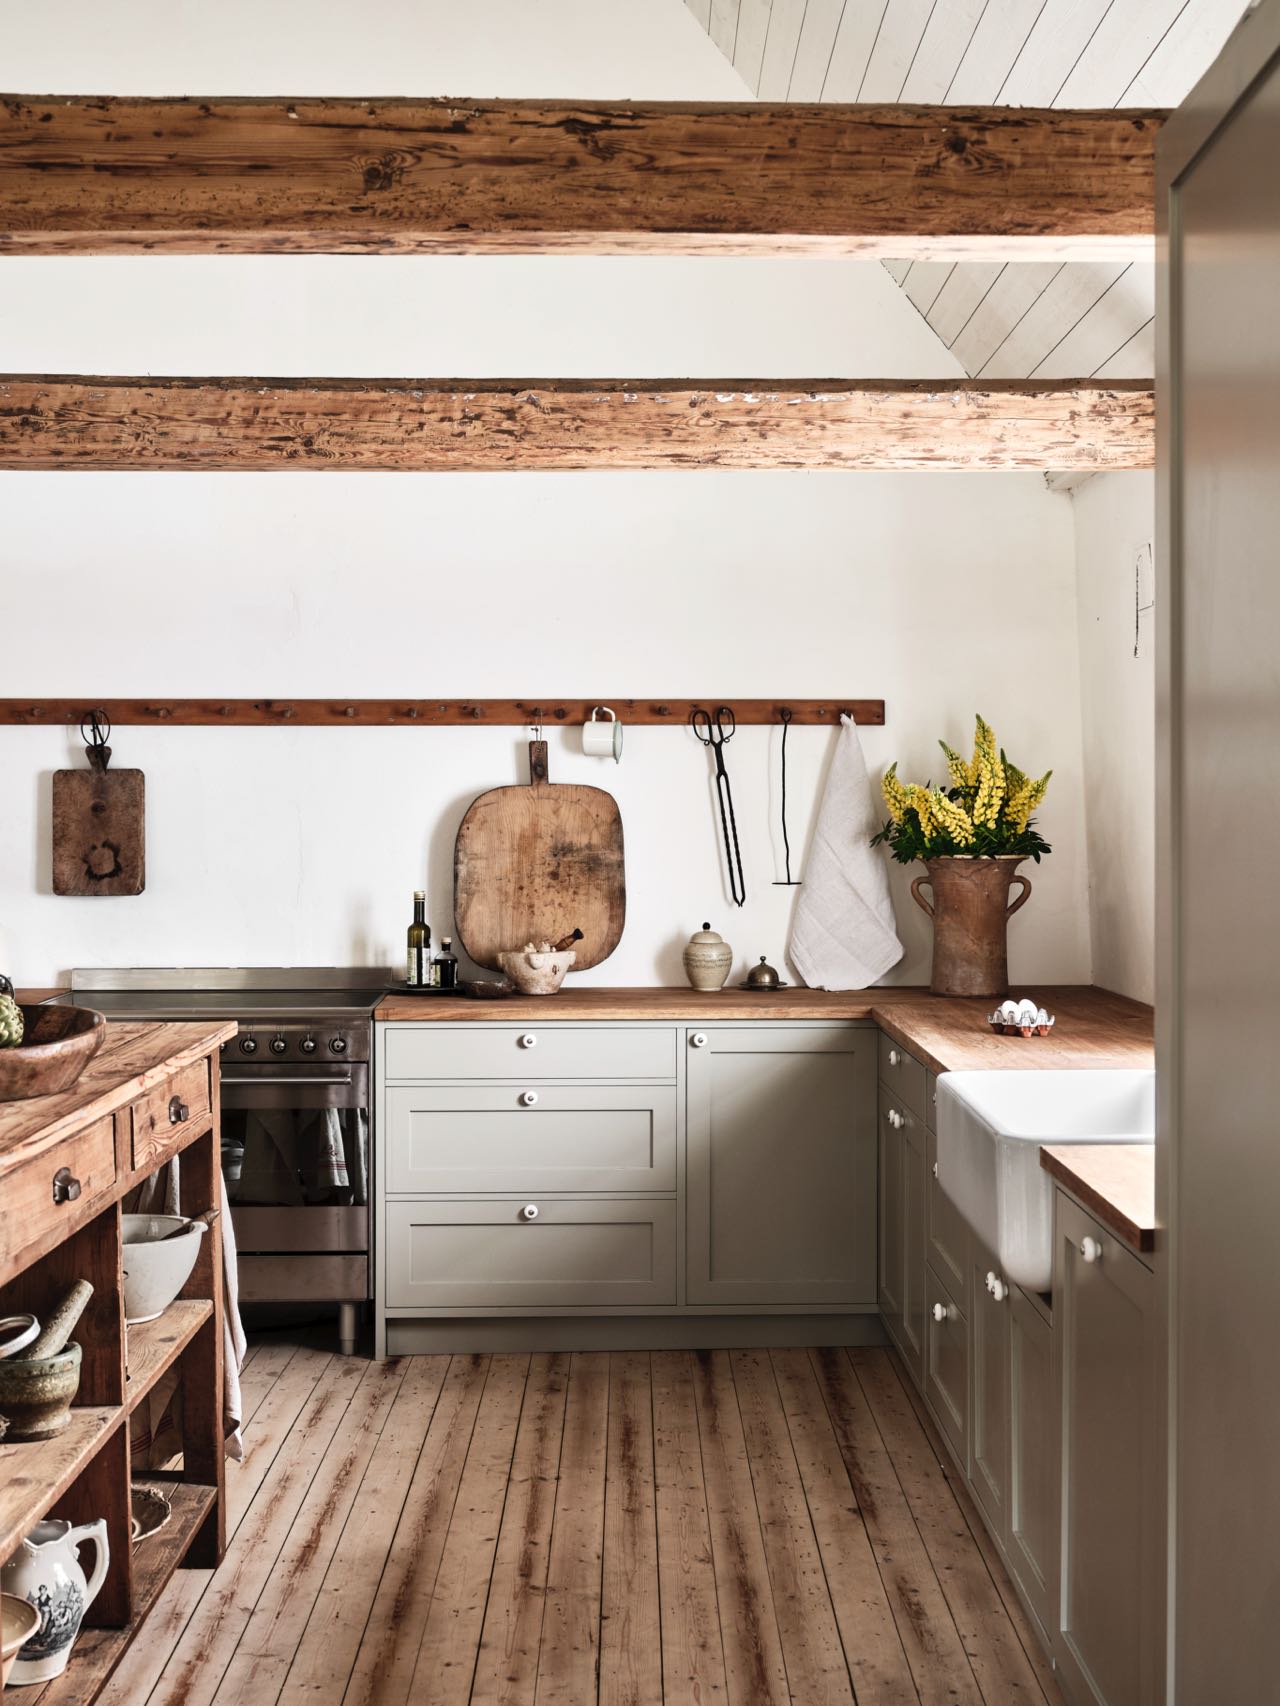 Trotz der Landhausbalken und einiger Hinweise auf den Stil ist die Küche von Nordiska Kök doch eher dem Shaker-Look zuzuordnen. Das liegt an der Schlichtheit der Möbel, den Formen und der Farbe.